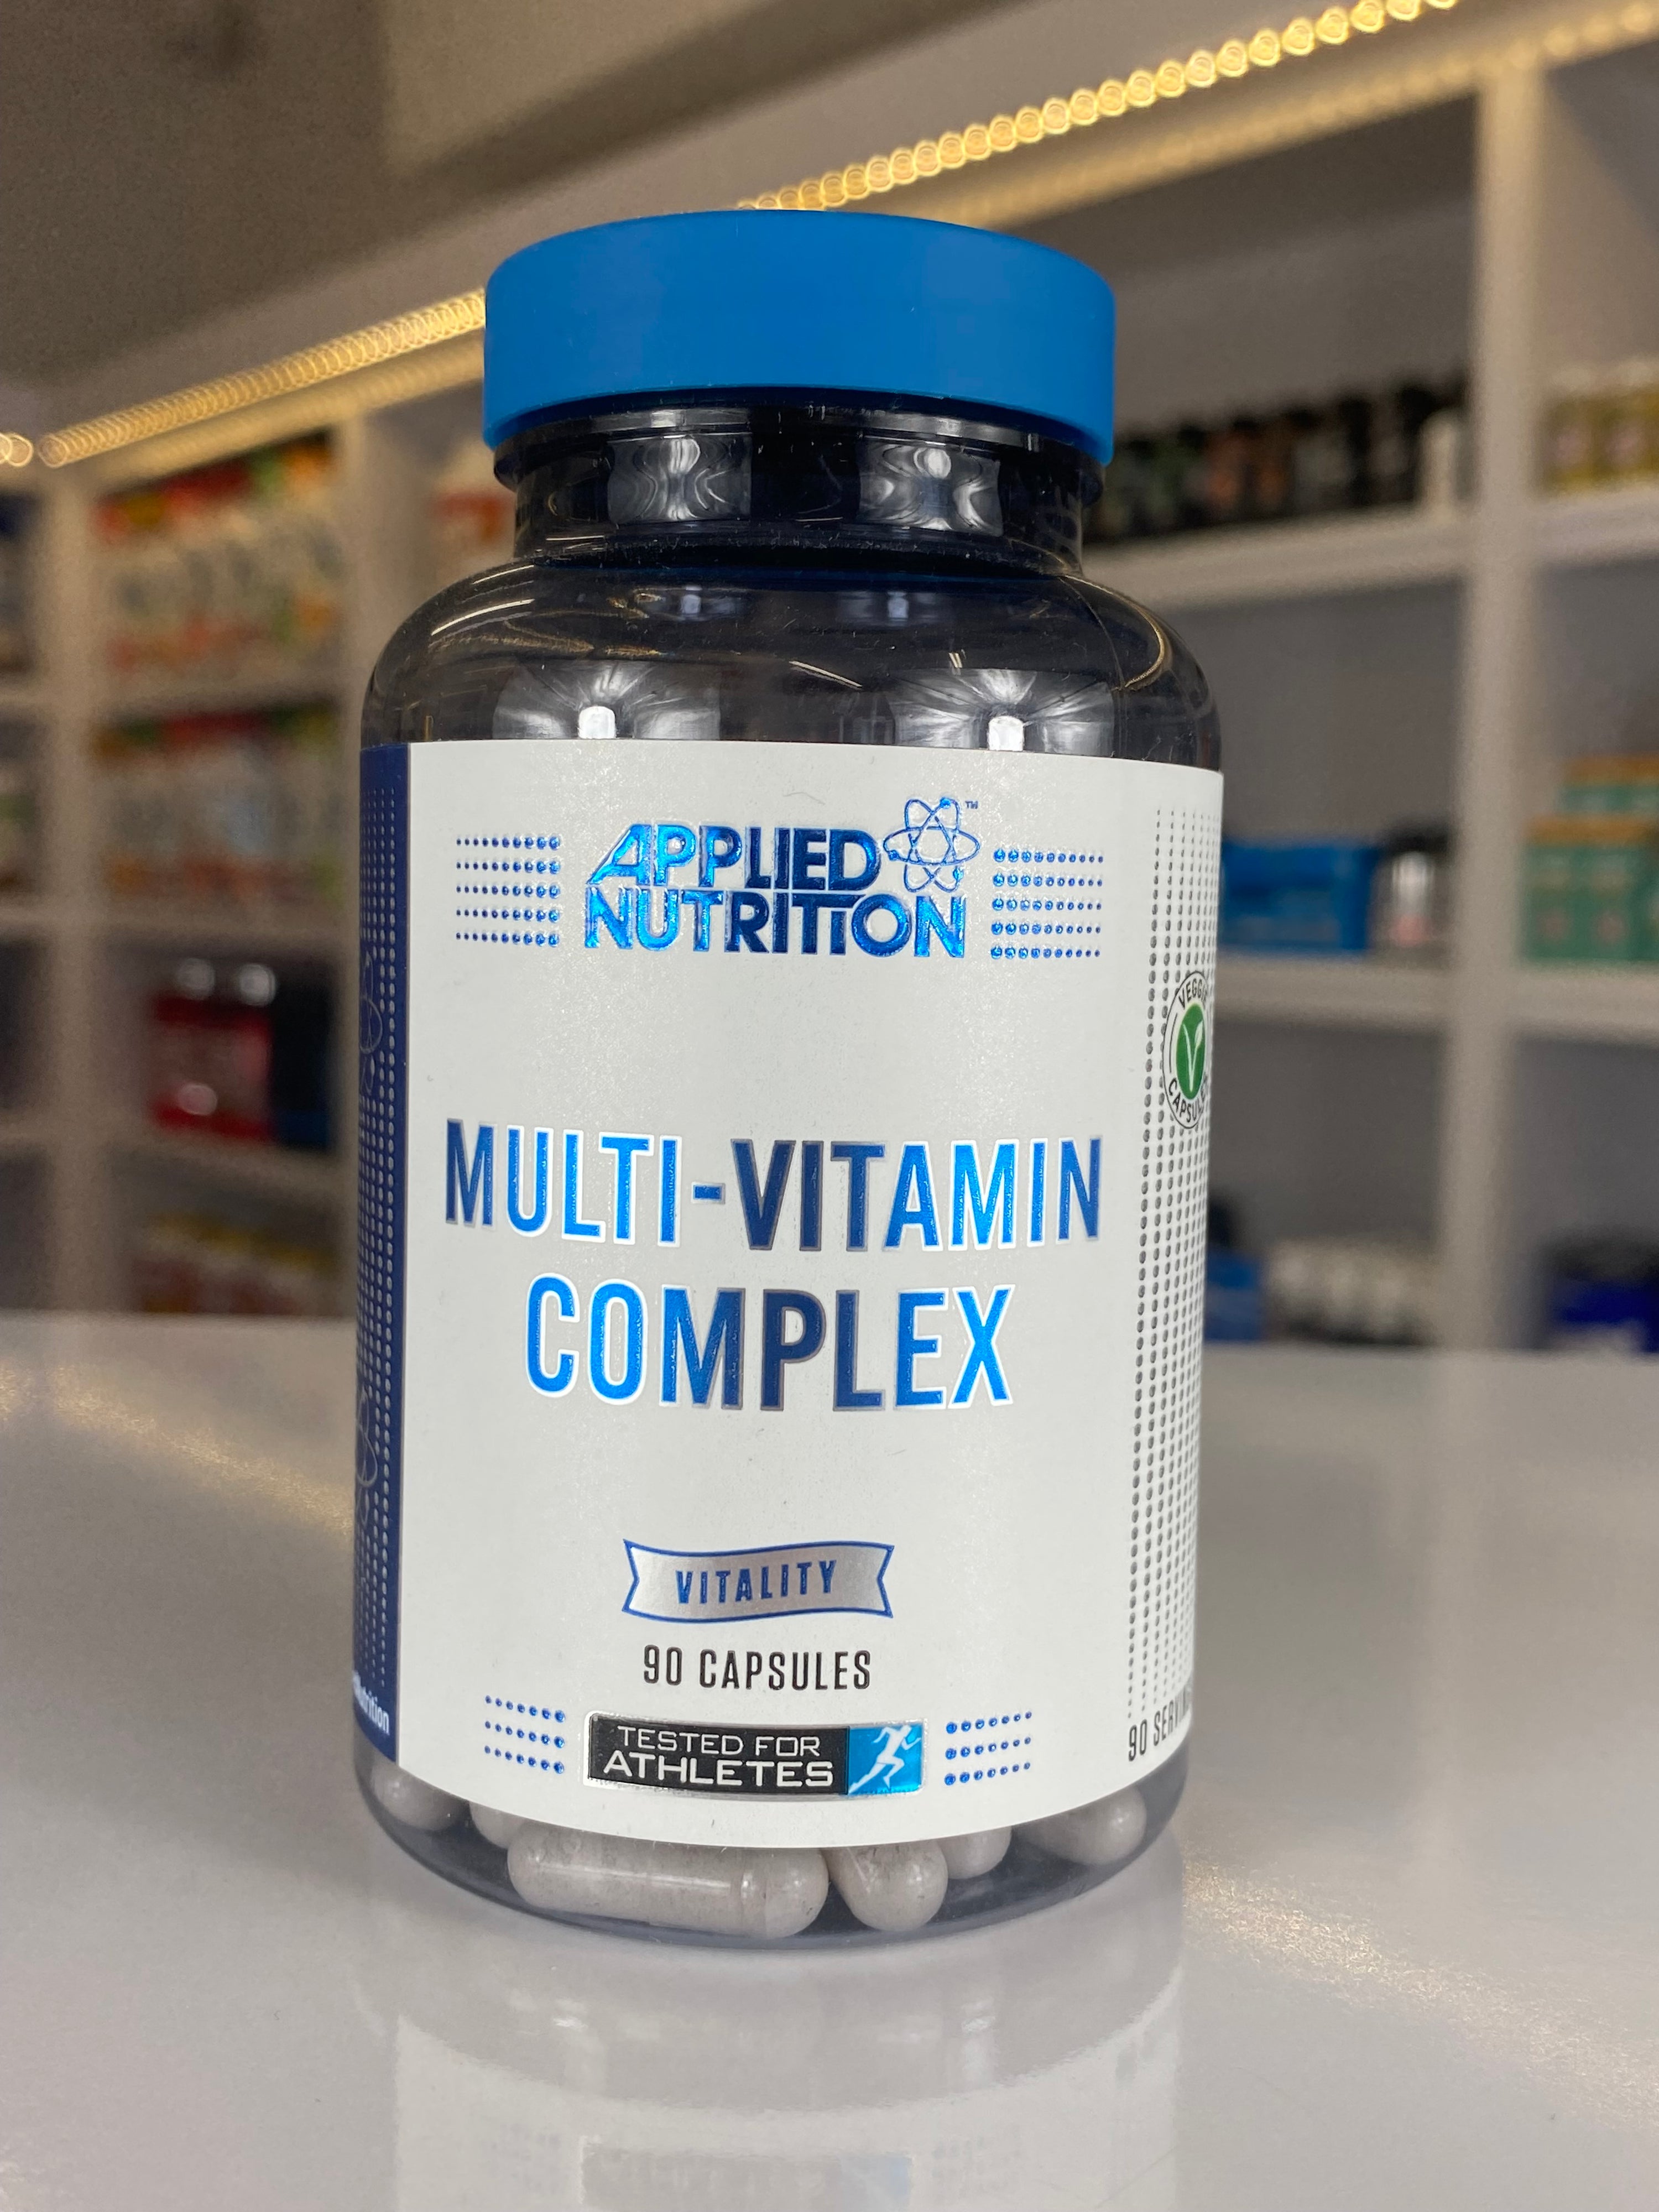 Multi-vitamin complex